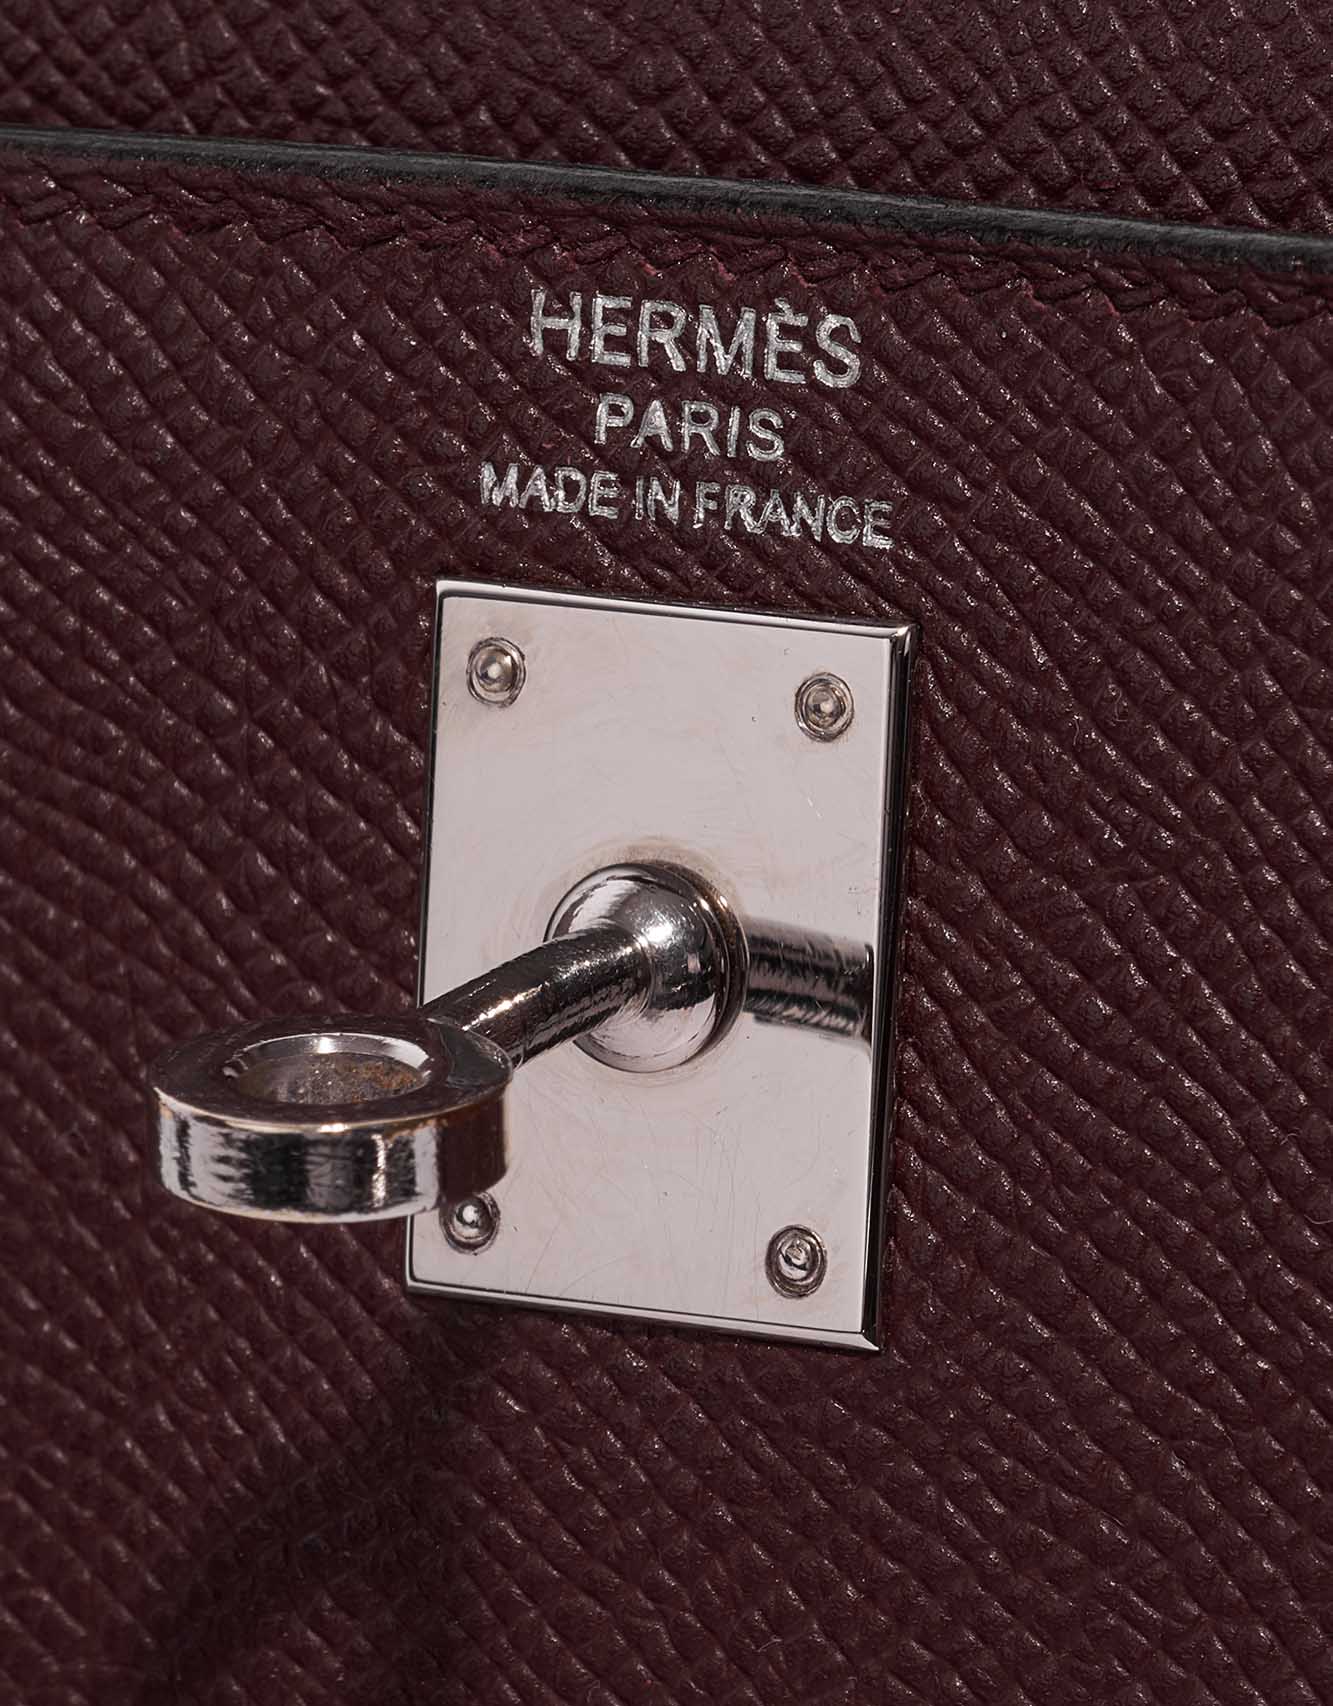 Hermes Kelly 25 Handbag CC55 Rouge H Epsom GHW